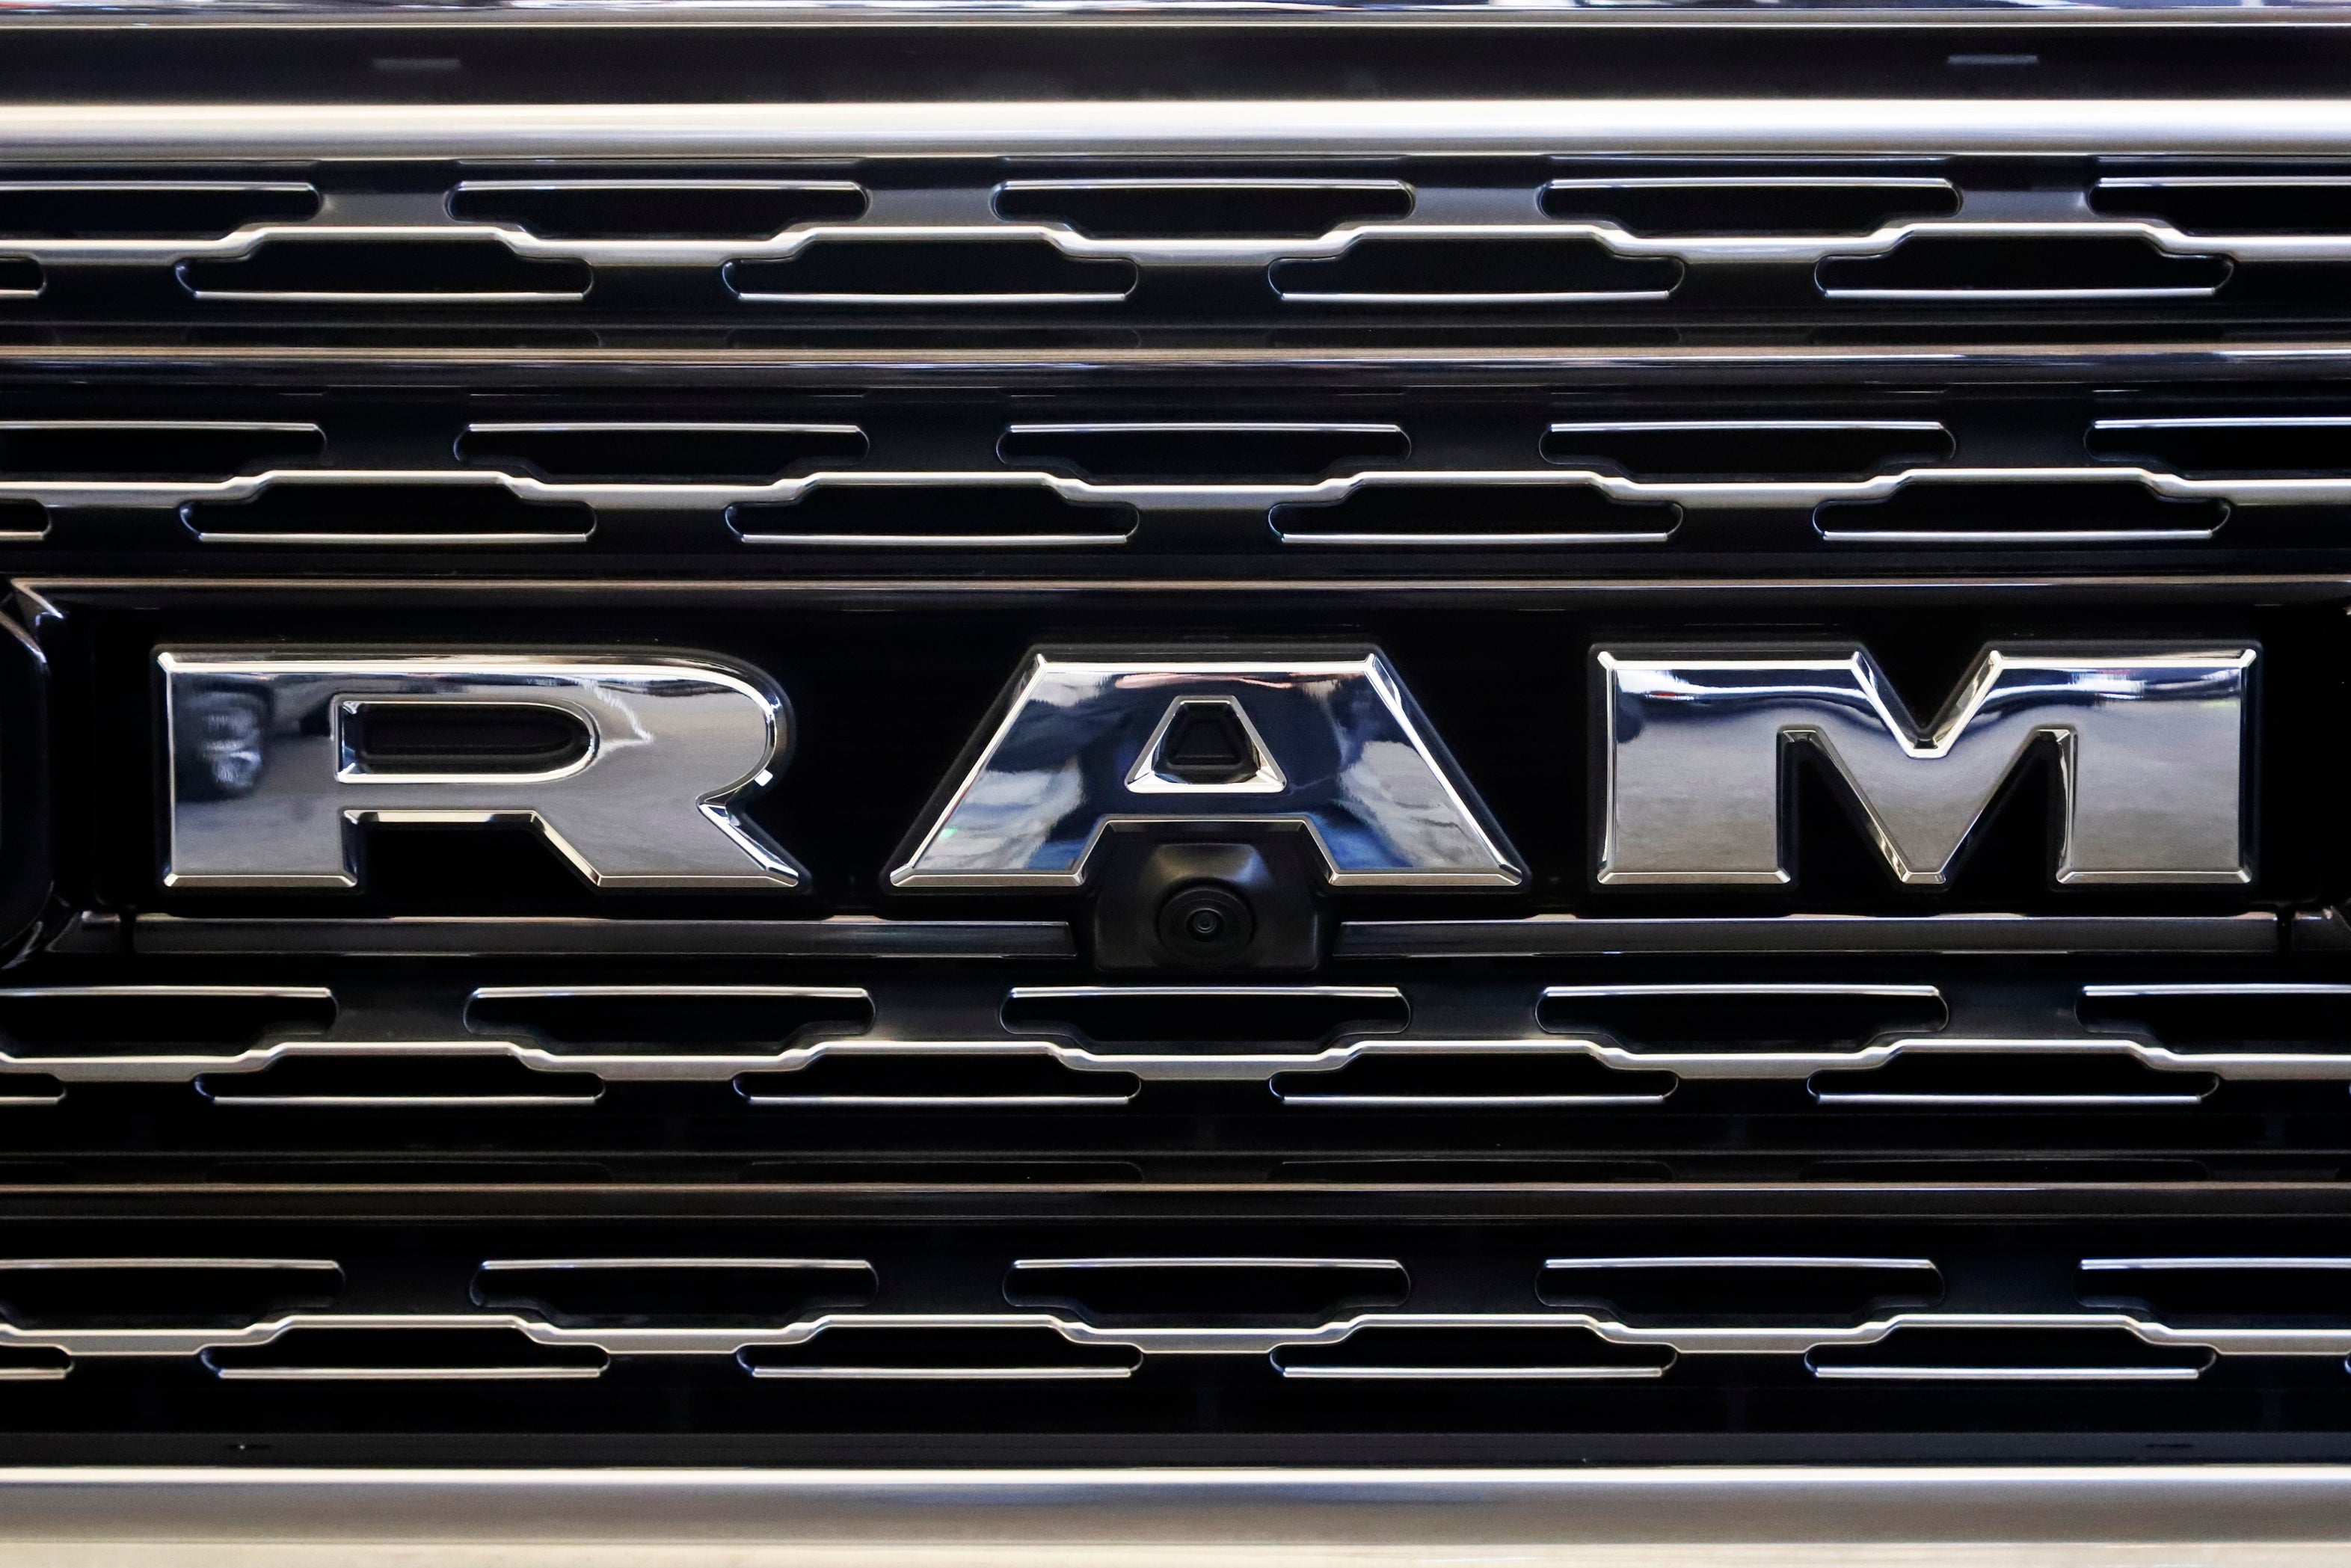 Ram-Truck Recall